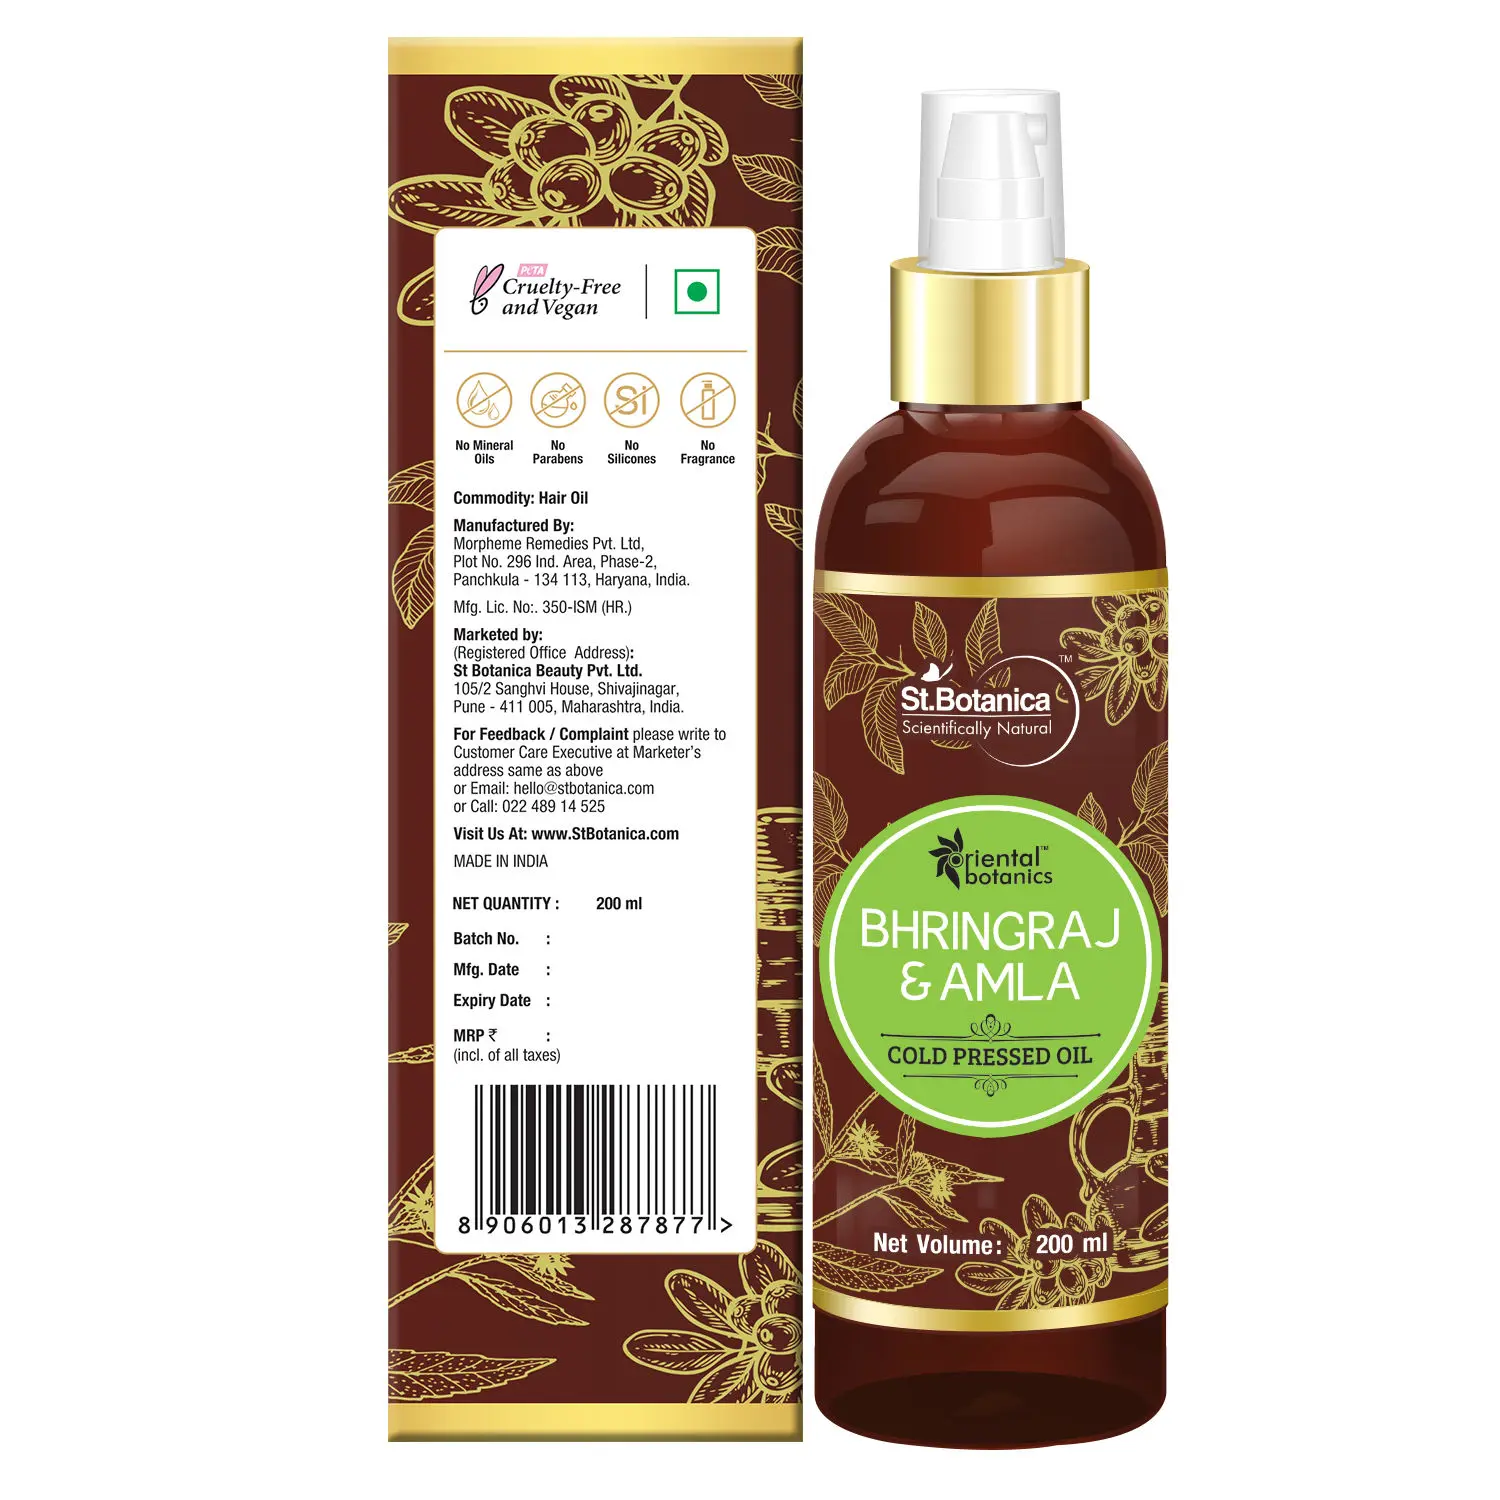 Oriental Botanics Bhringraj & Amla Oil For Hair - 200ml (No Mineral Oil, Silicon or Paraben)